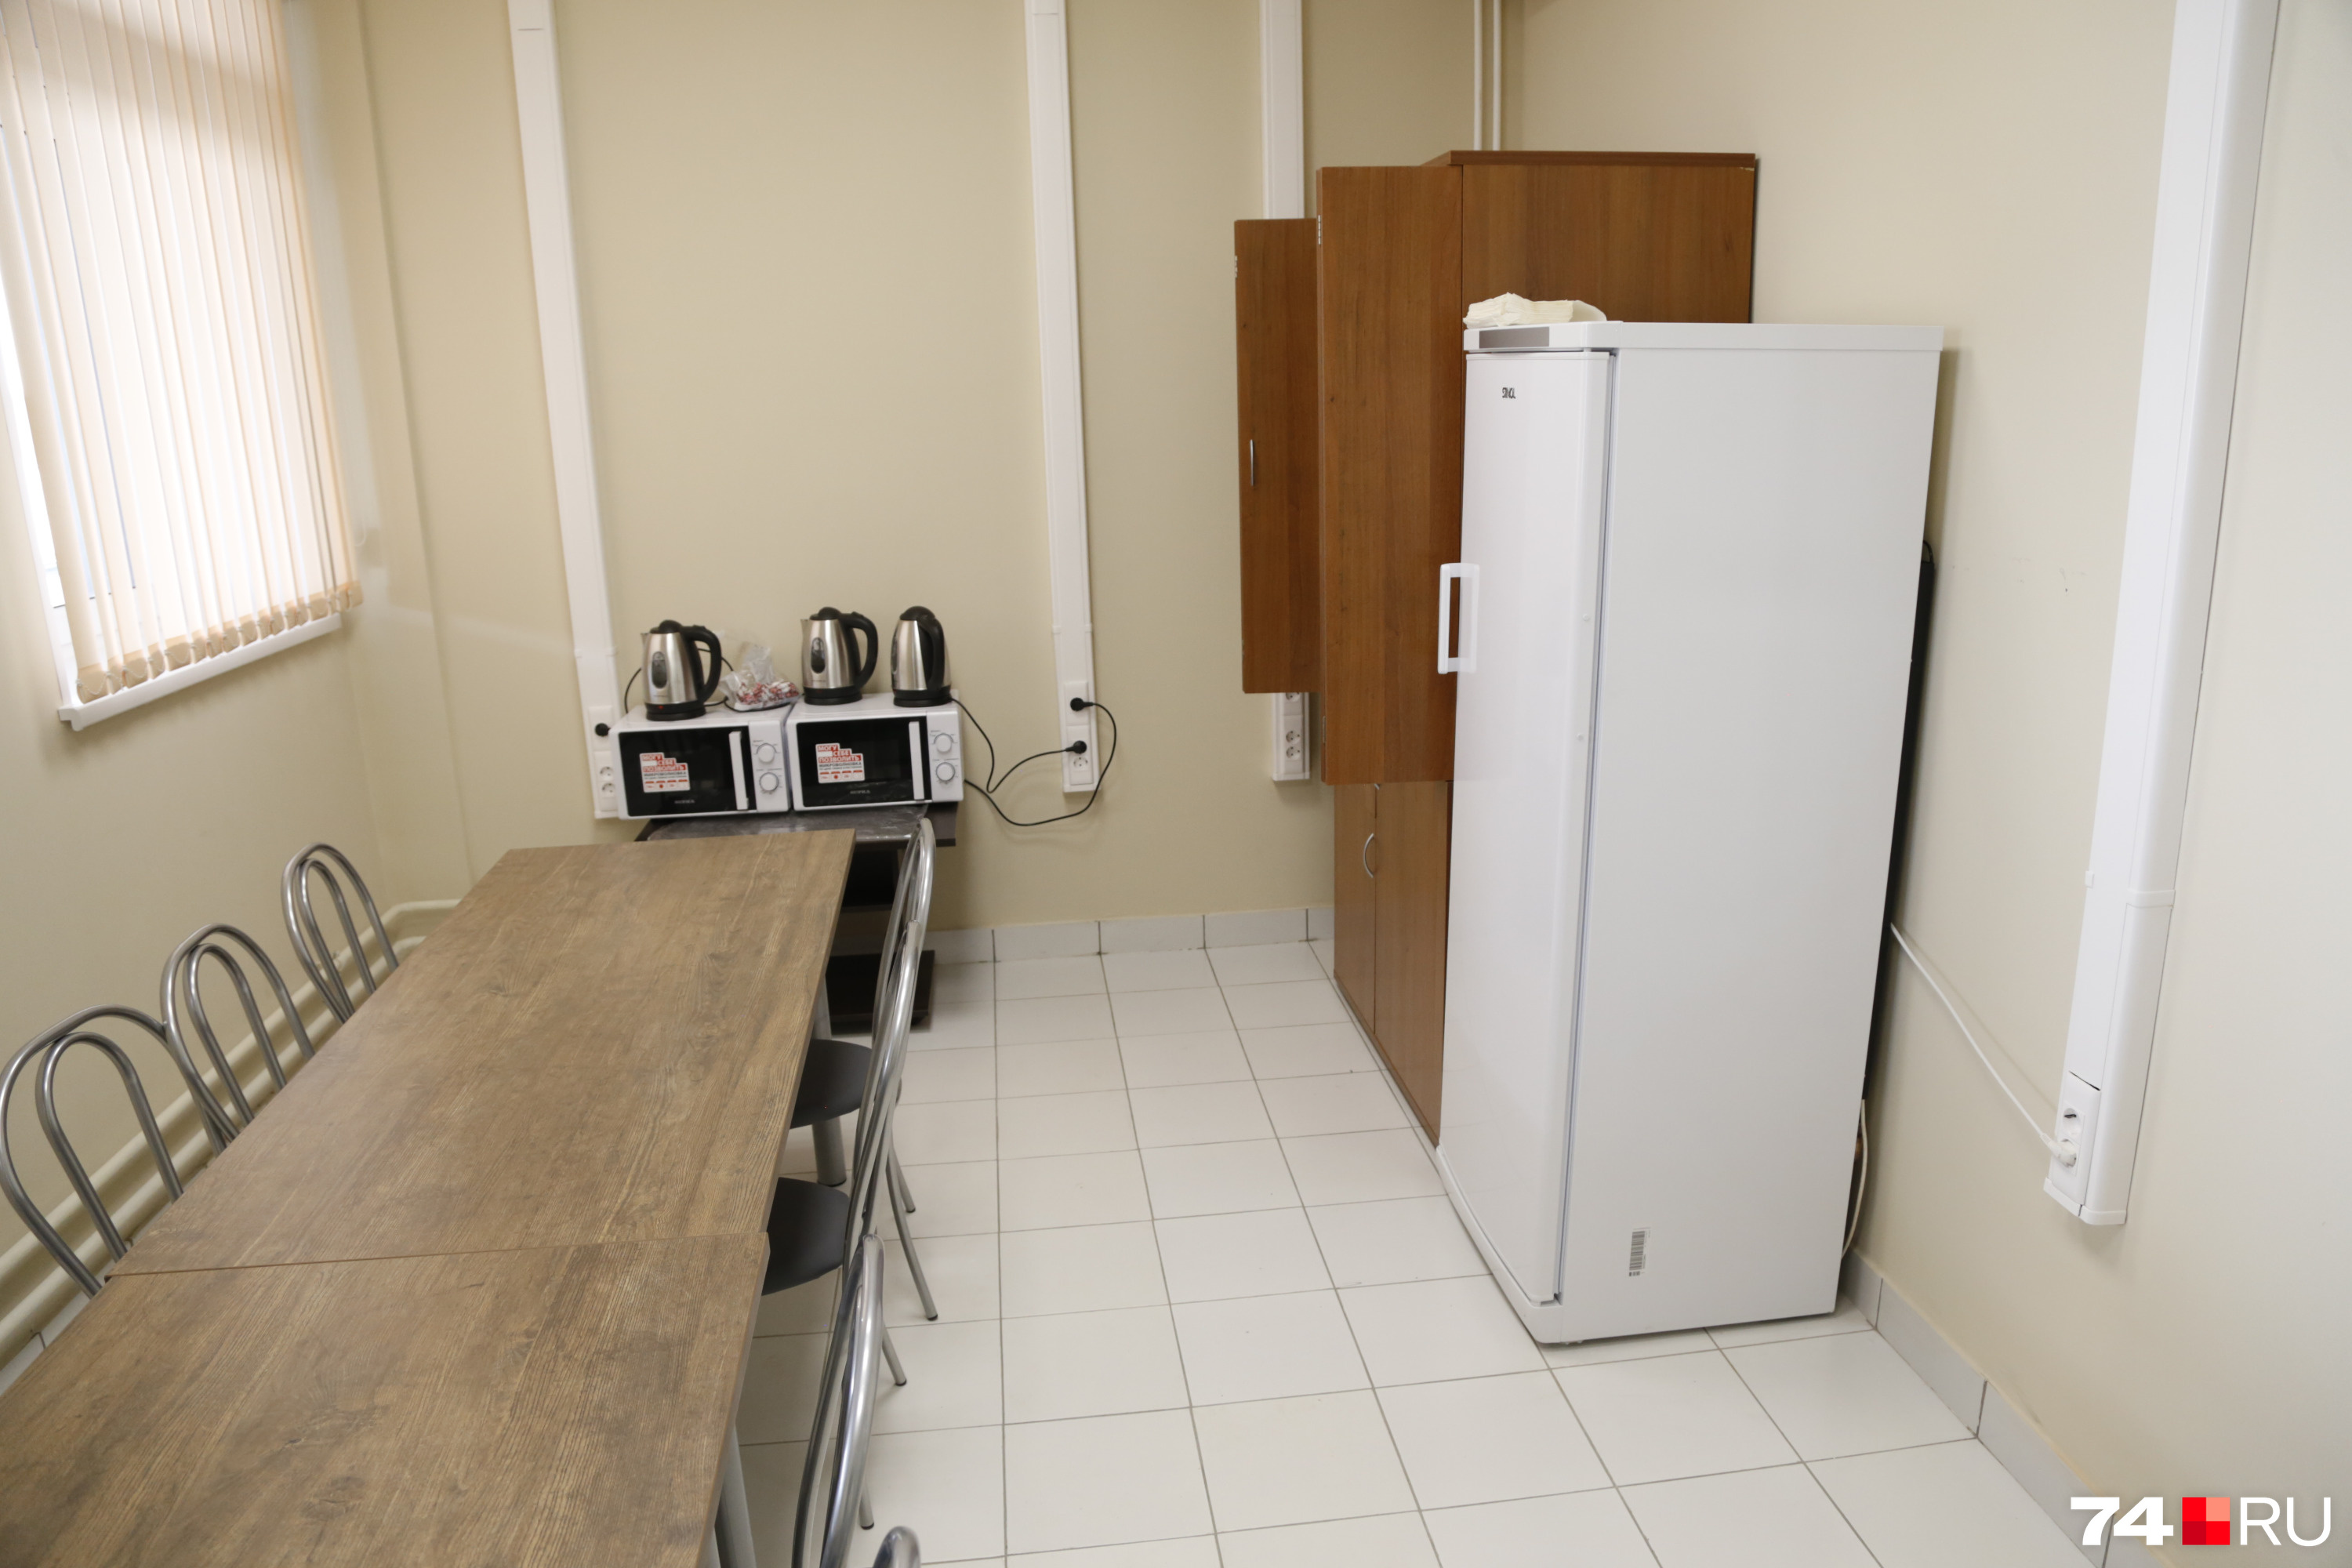 В столовой для сотрудников — две микроволновки и холодильник